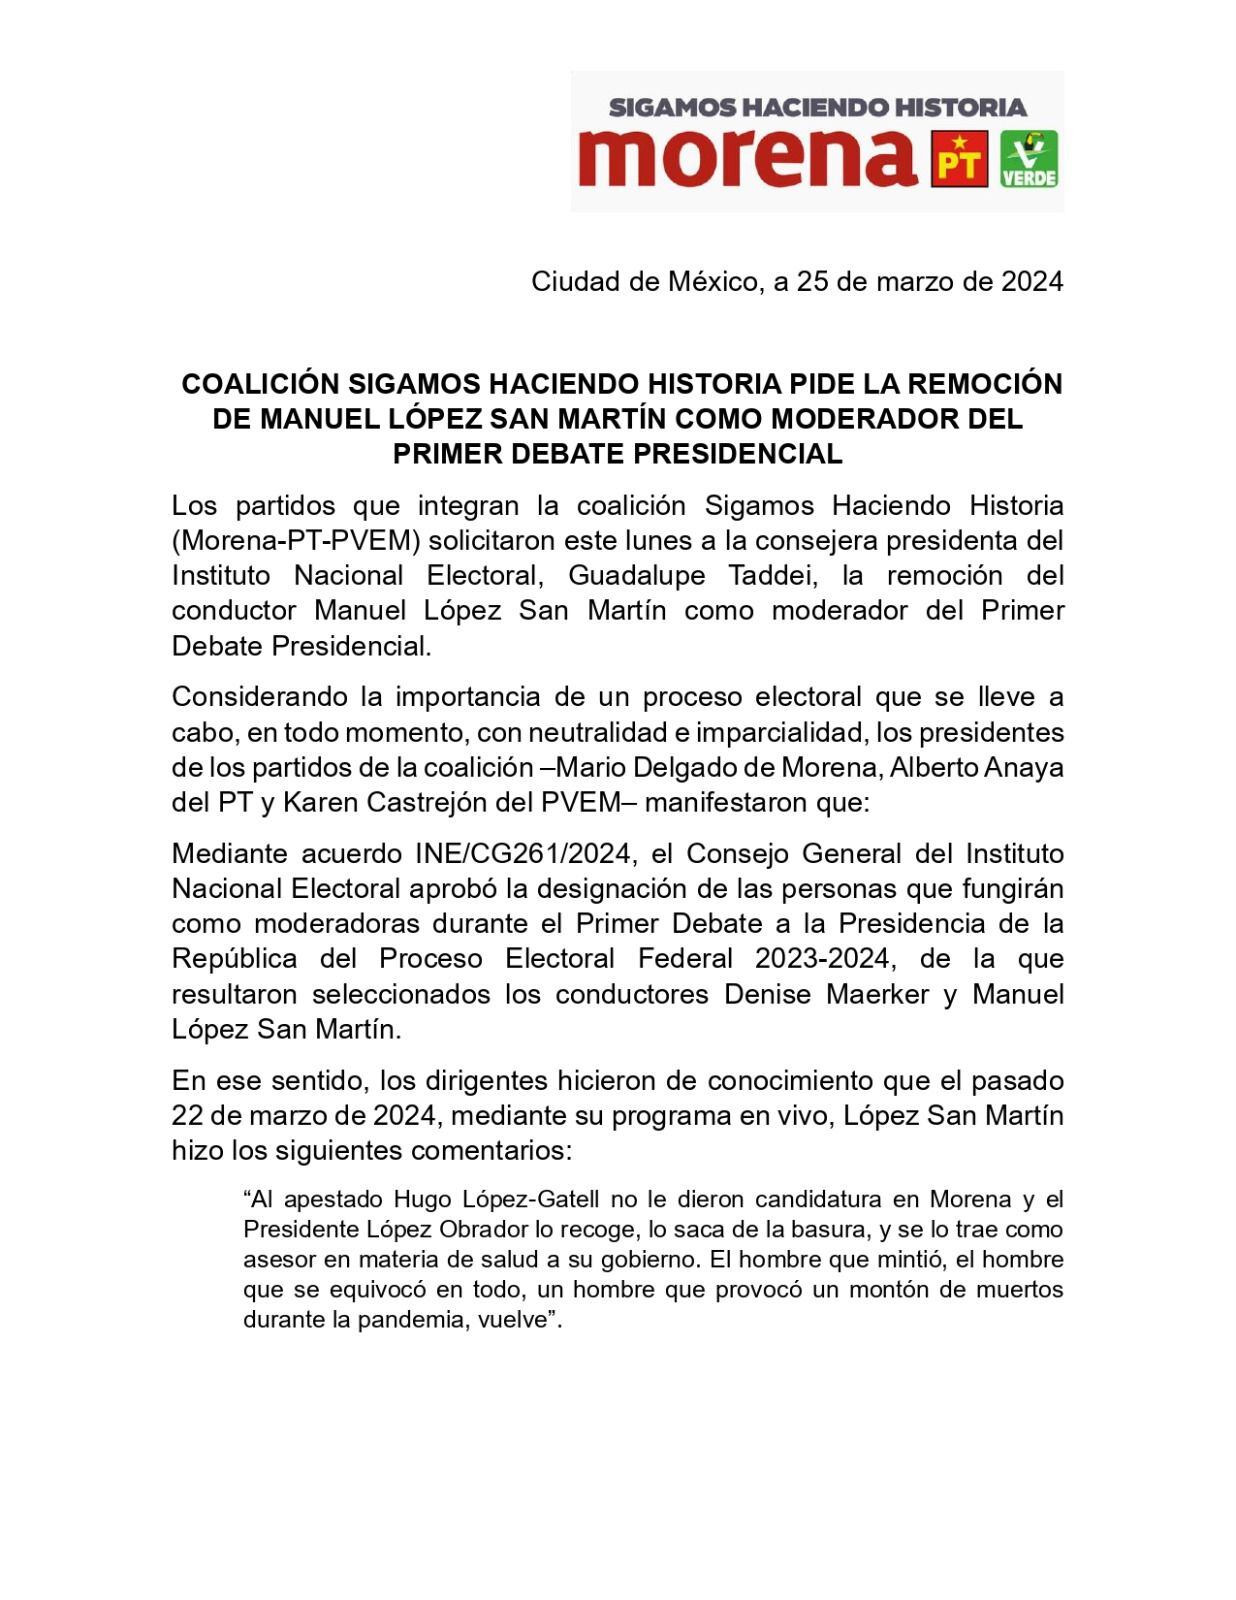 Morena no quiere que Manuel López San Martín sea moderador en el primer debate presidencial